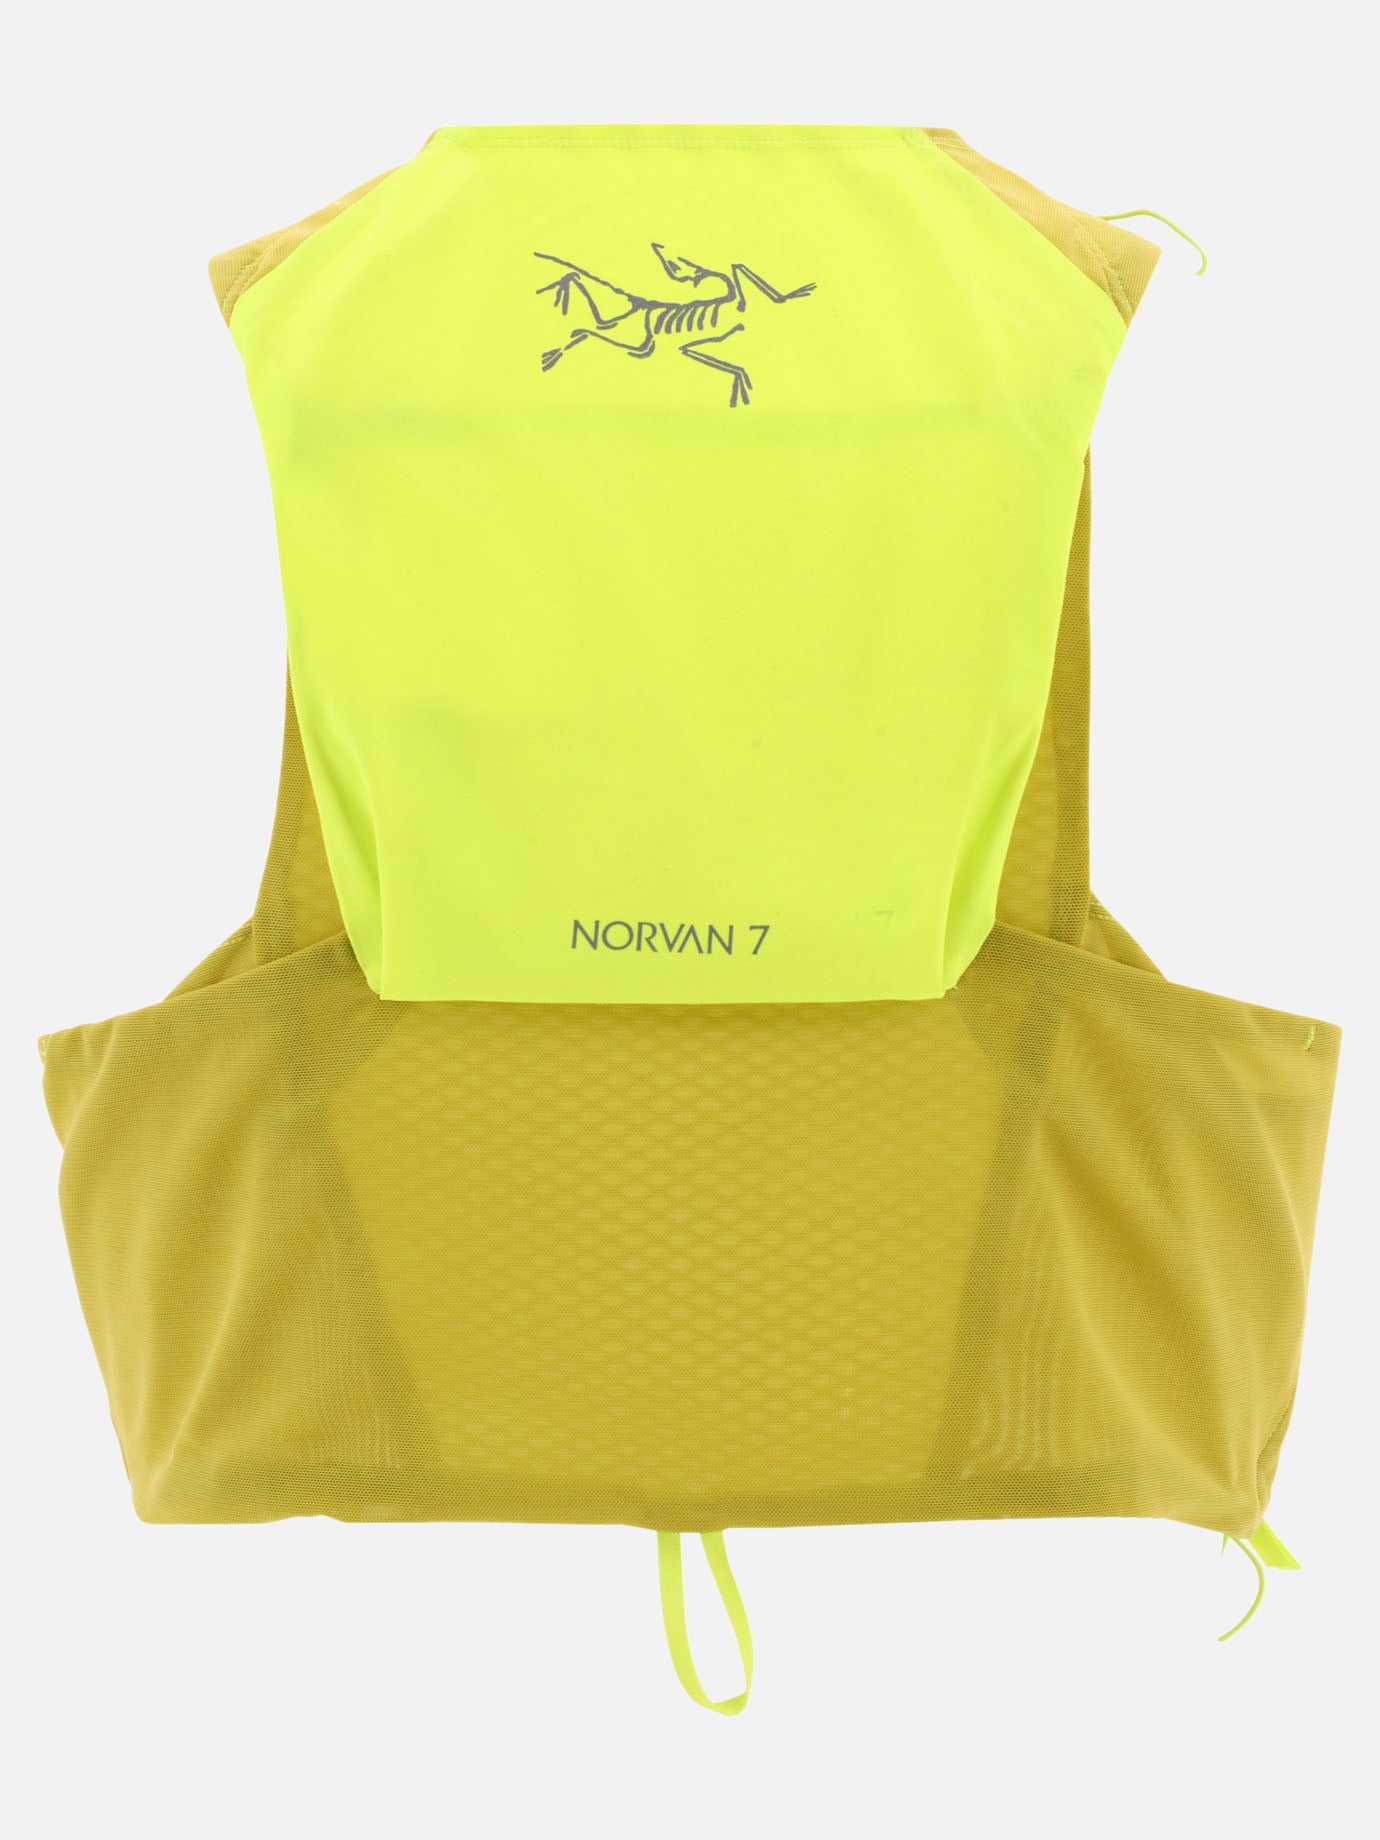 "Norvan 7" vest jacket